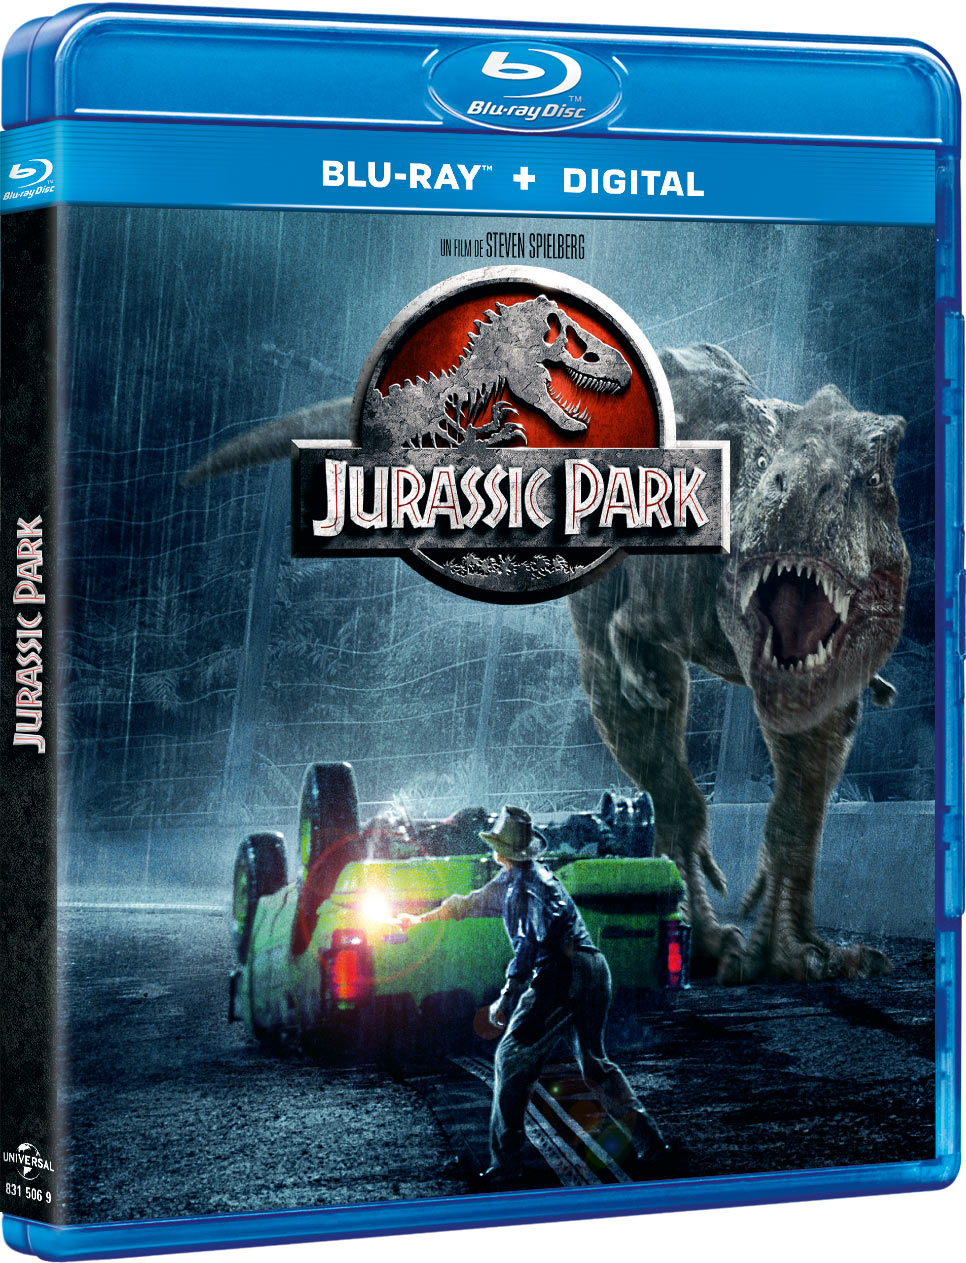 Jurassic Park - Blu-ray + Digital